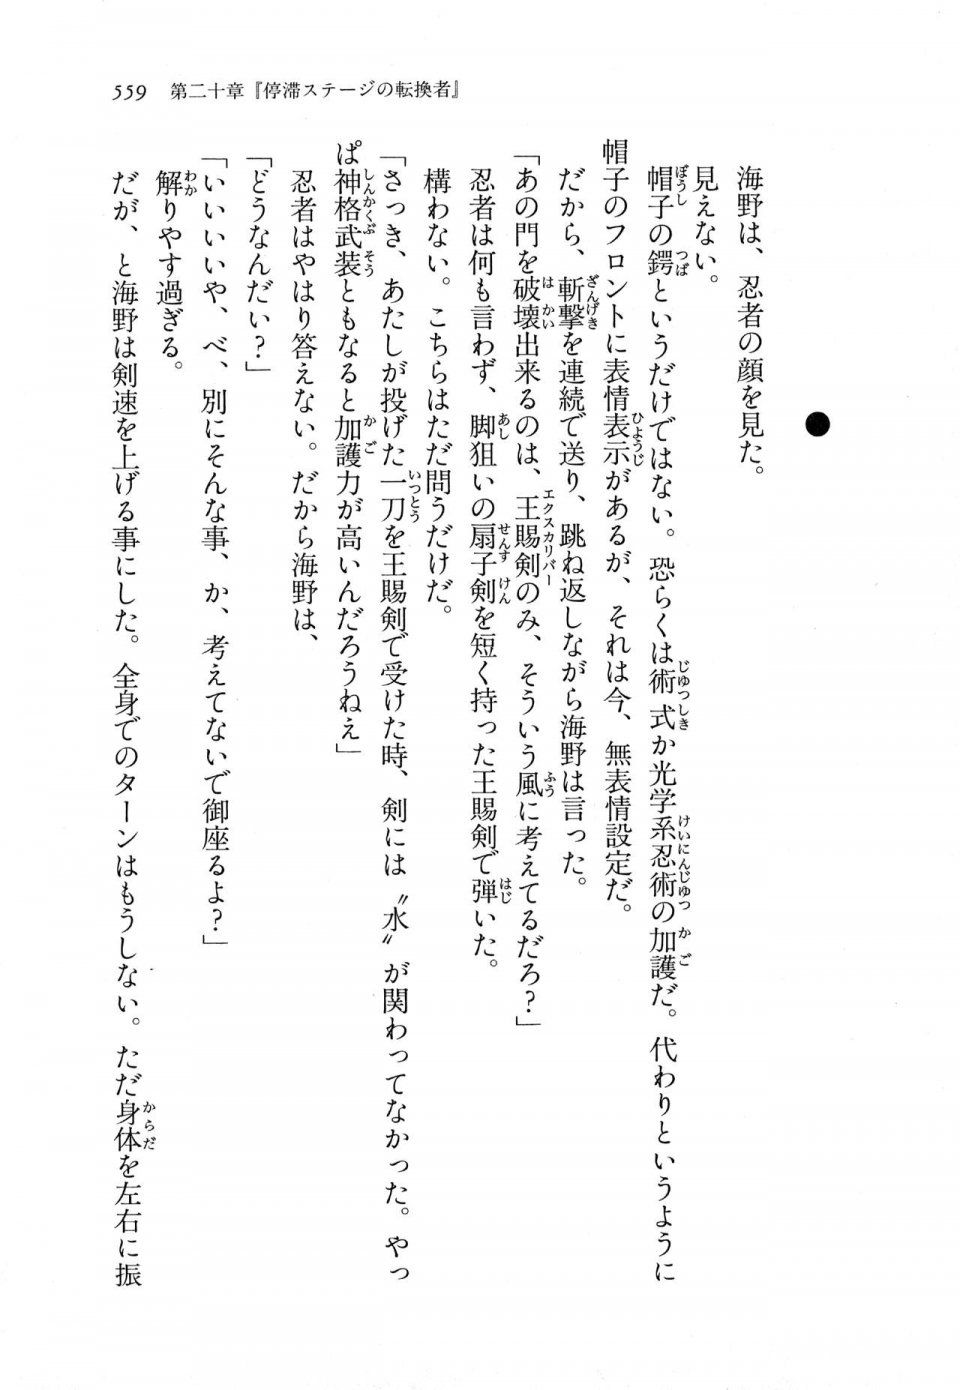 Kyoukai Senjou no Horizon LN Vol 11(5A) - Photo #559